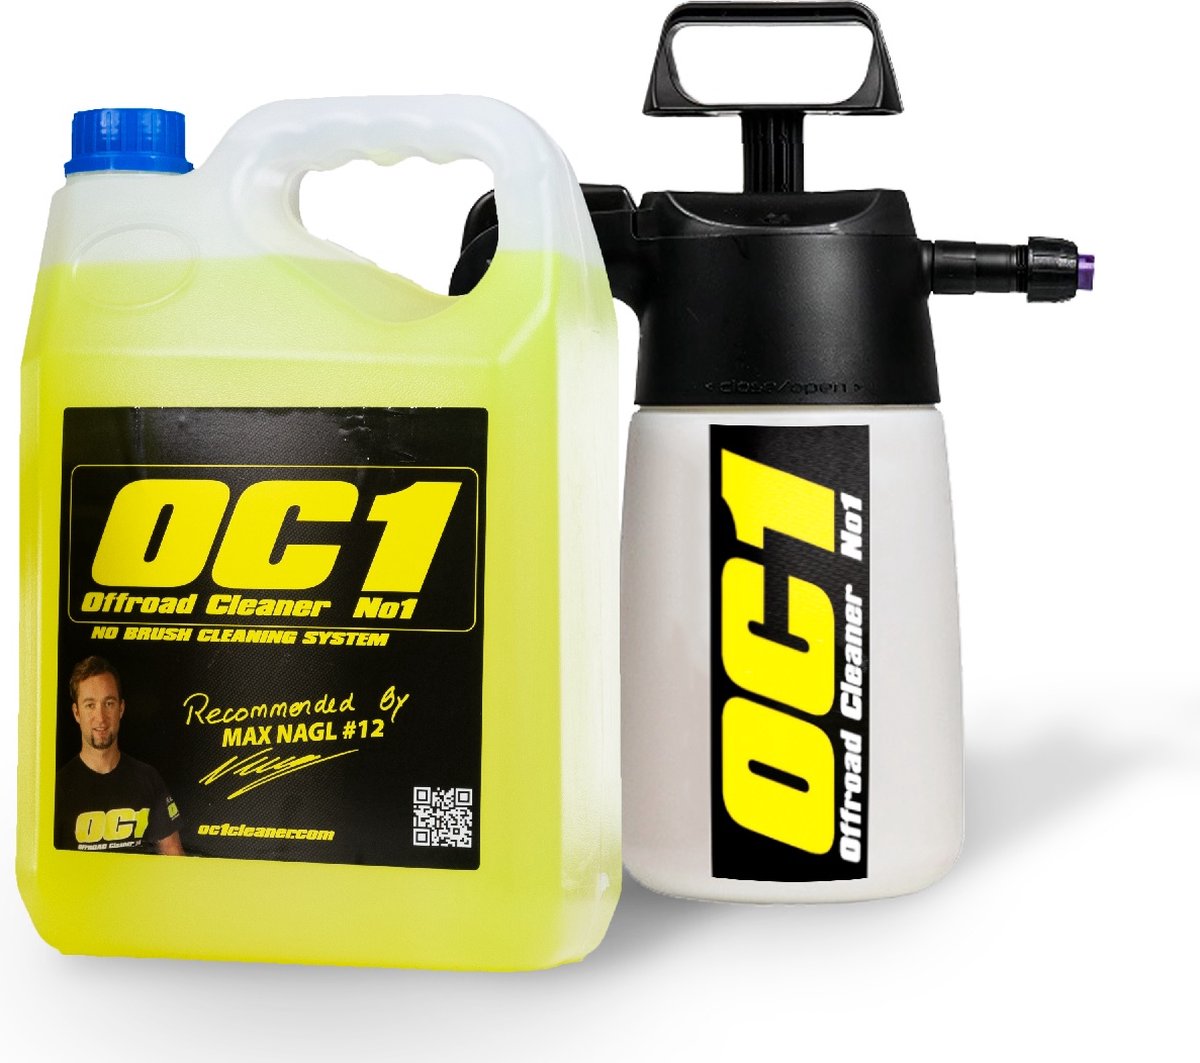 OC1 Cleaner Sprayer Set - 5 liter schoonmaakmiddel met Foamer - Maakt eenvoudig motor schoonmaken mogelijk - geen agressieve stoffen - eenvoudig aanbrengen van schoonmaakmiddel - dikke schuimlaag zorgt voor perfecte reiniging alle oppervlakken - OC1